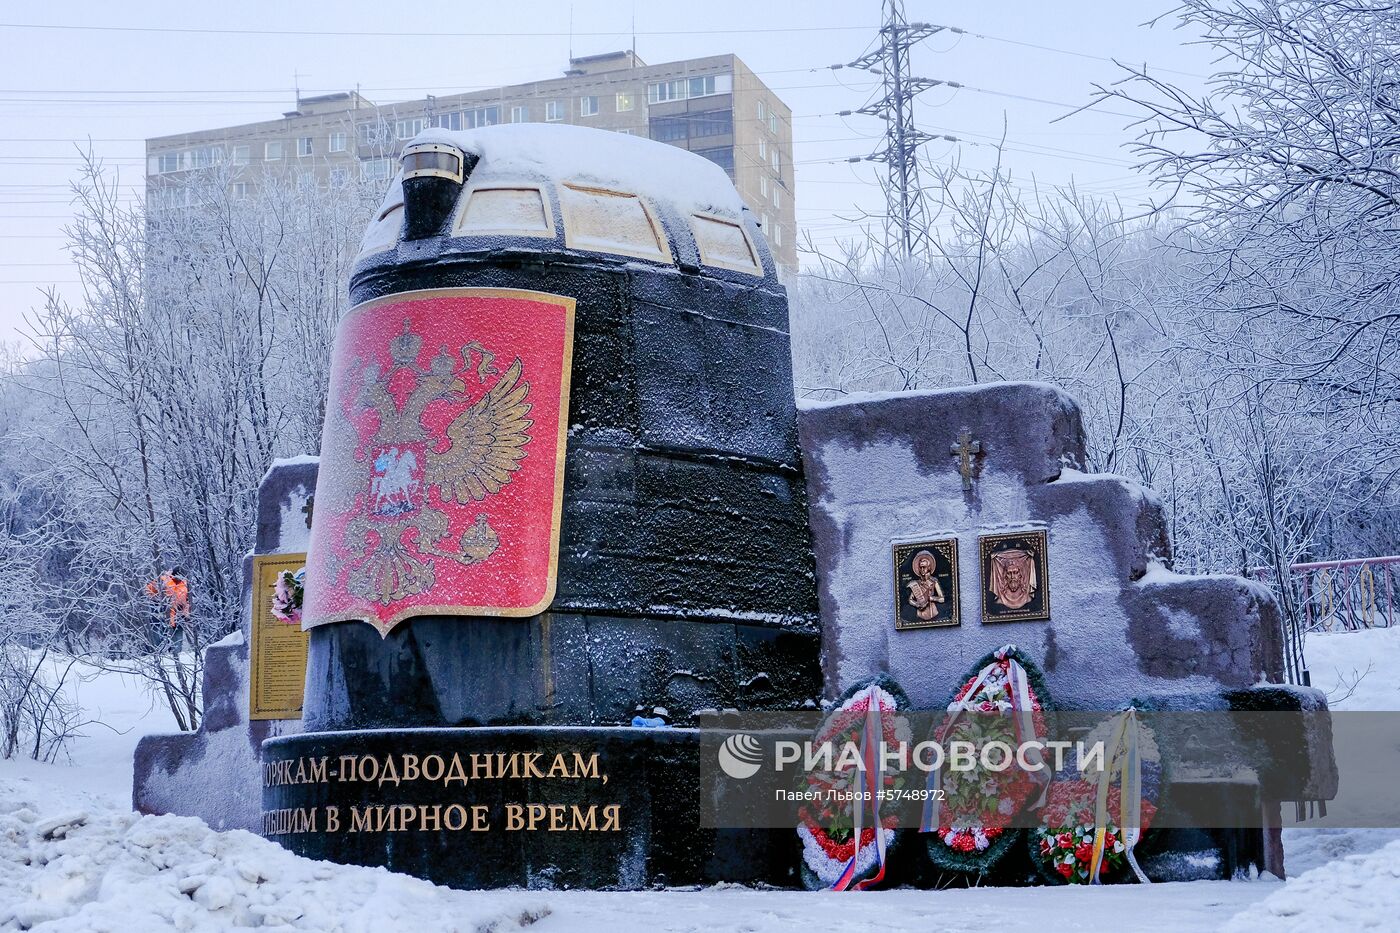 Фрагмент рубки АПЛ "Курск" на мемориале "Морякам-подводникам, погибшим в мирное время"